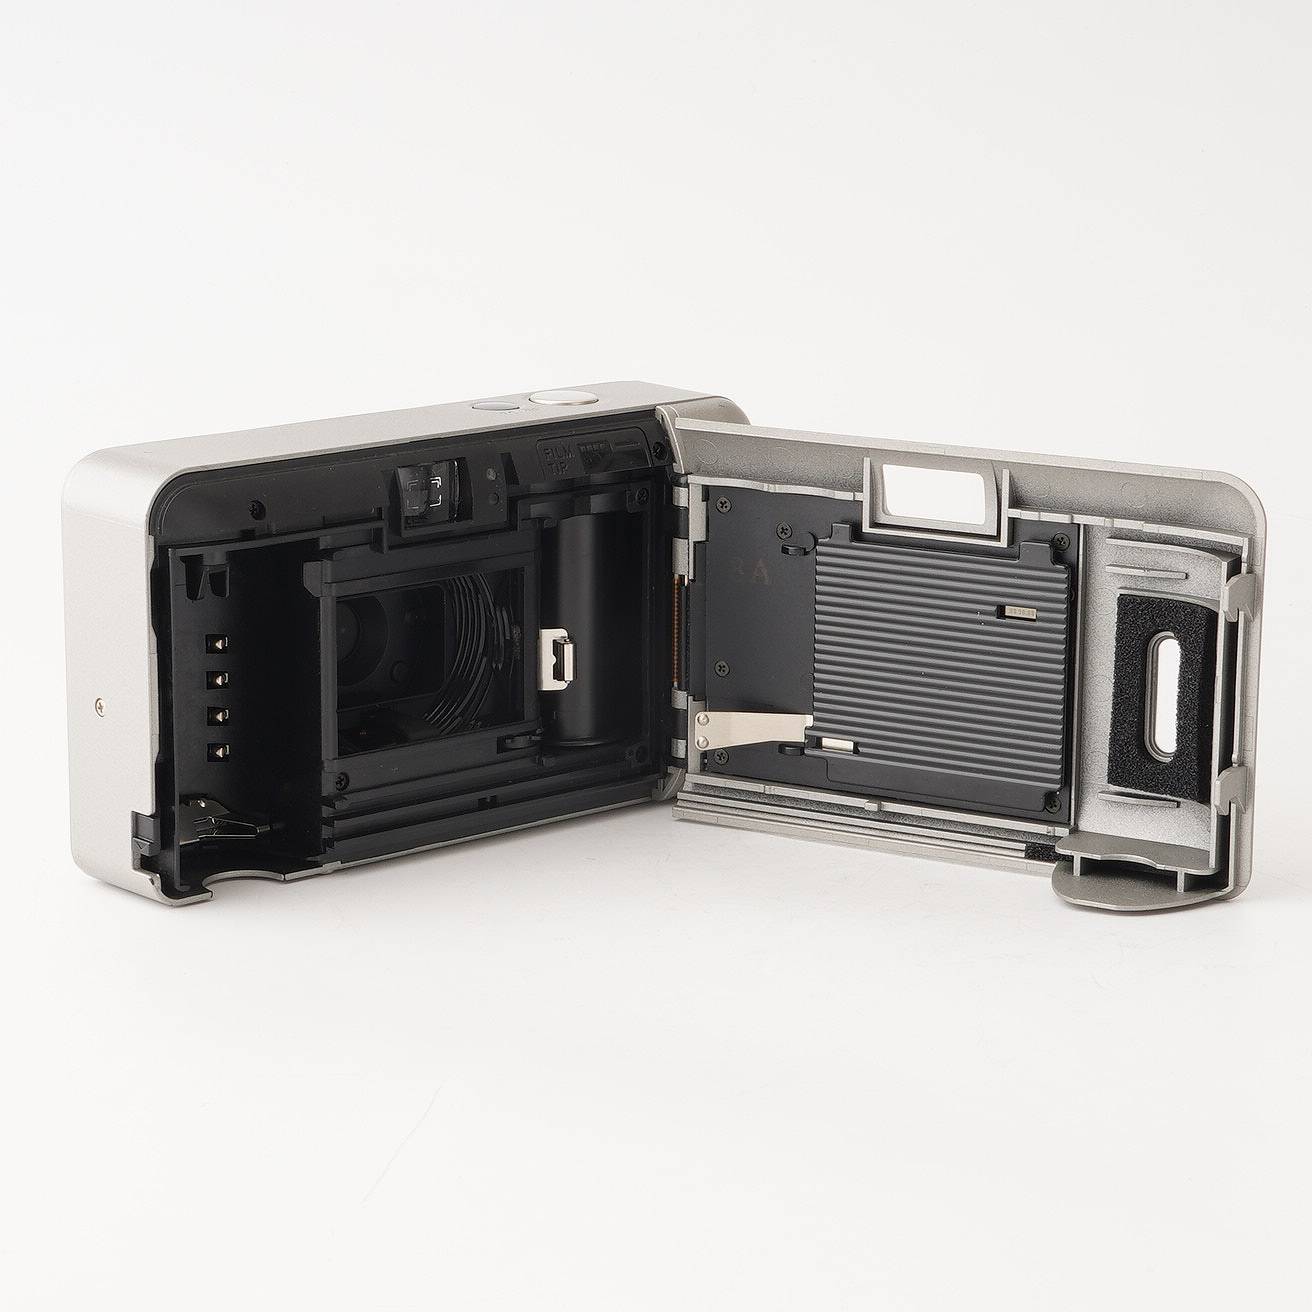 コニカ Konica BiG mini F / 35mm F2.8 – Natural Camera / ナチュラル ...